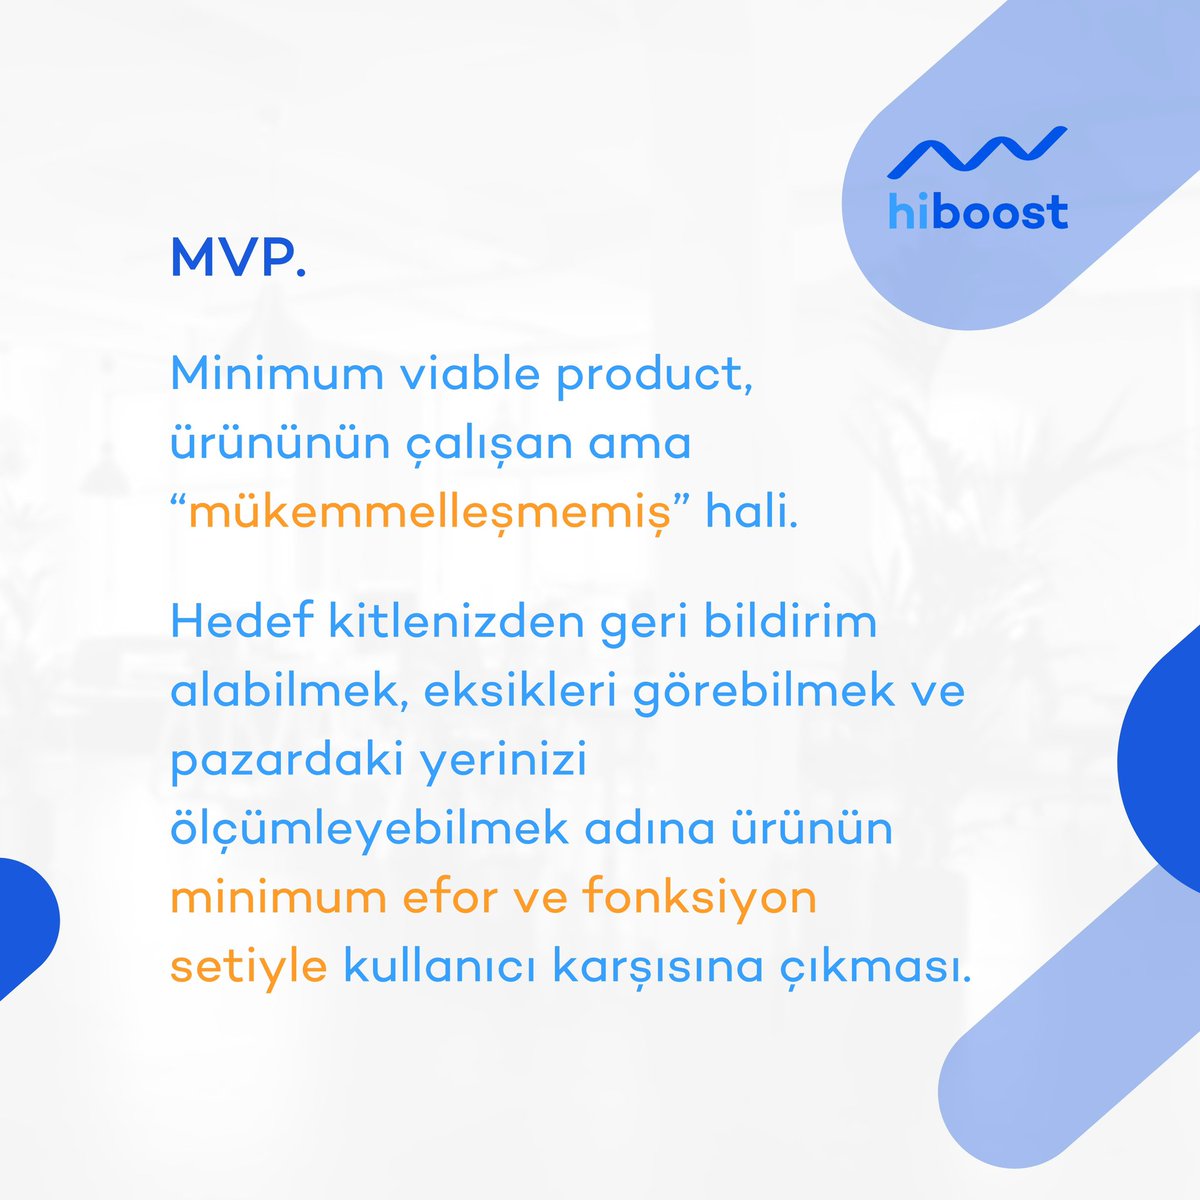 “MVP ürün çıkarmak” girişimcilik ekosistemin tam kalbine oturdu. 🎯

Peki, nedir bu MVP?

#mvp #minimumviableproduct #product #benchmark #hiboost